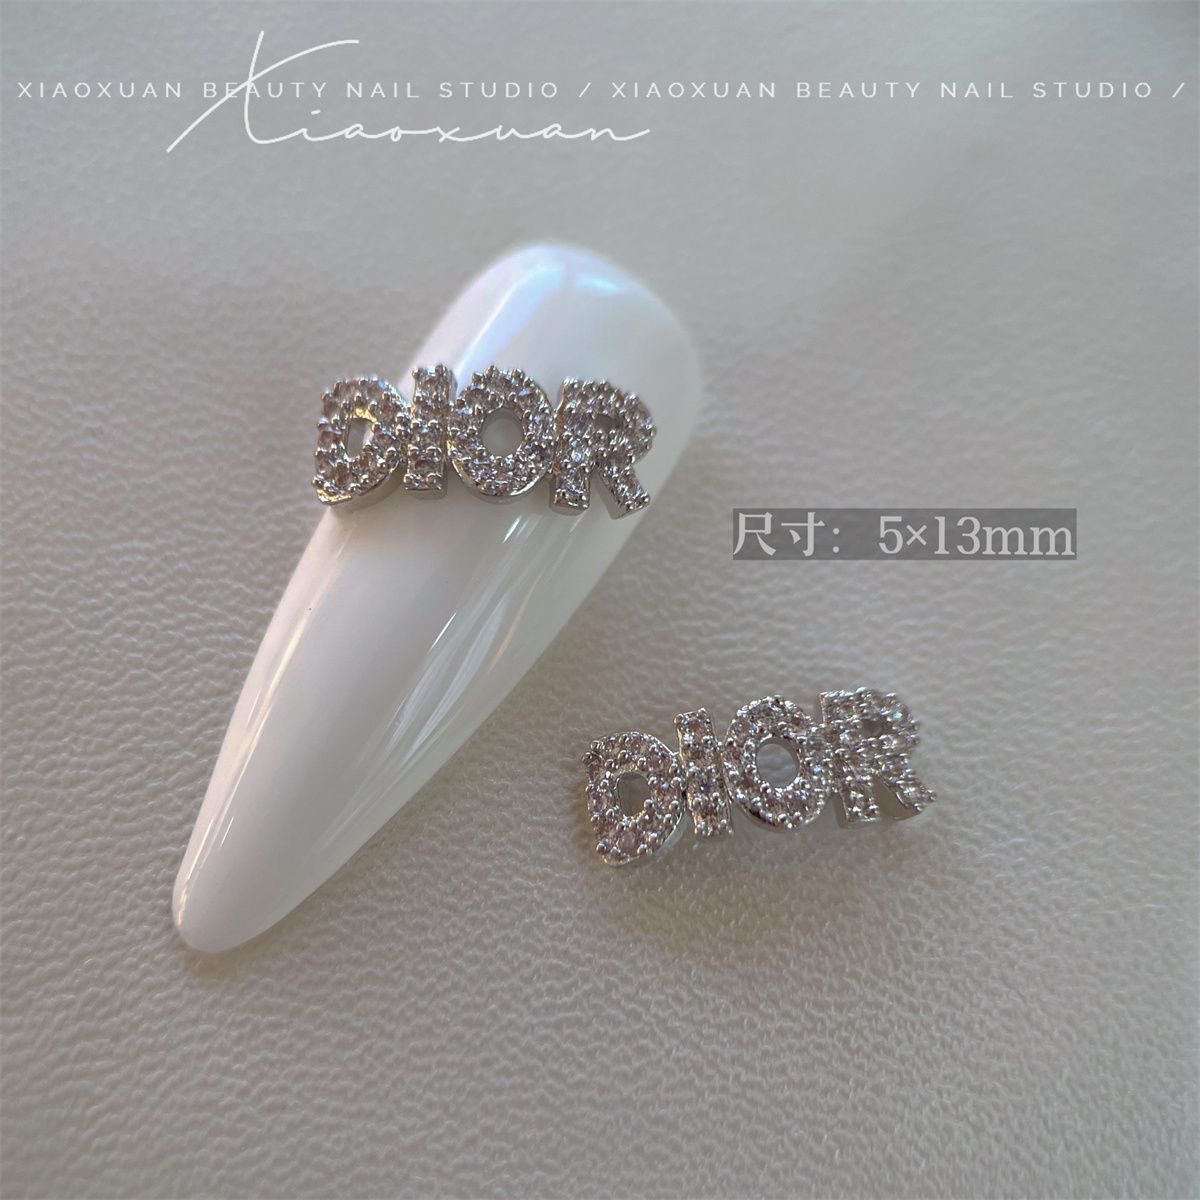 Dior nail charm silver